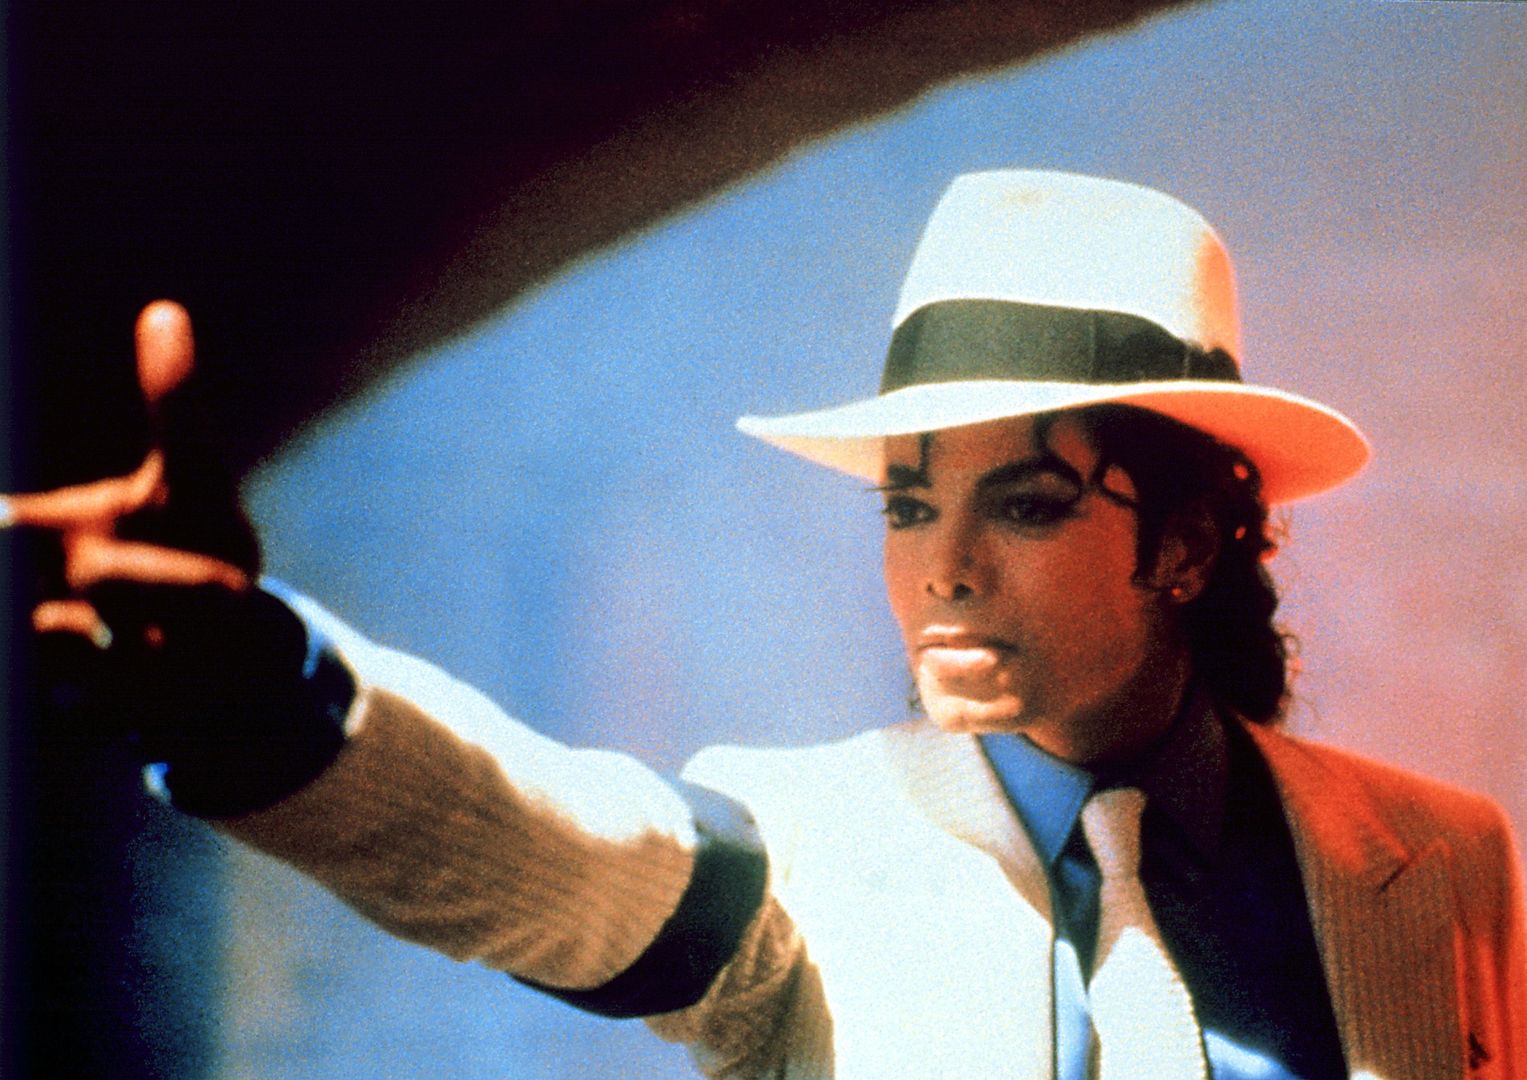 Ochroniarz Michaela Jacksona zdradził jego tajemnicę. To dlatego poddał się operacji nosa